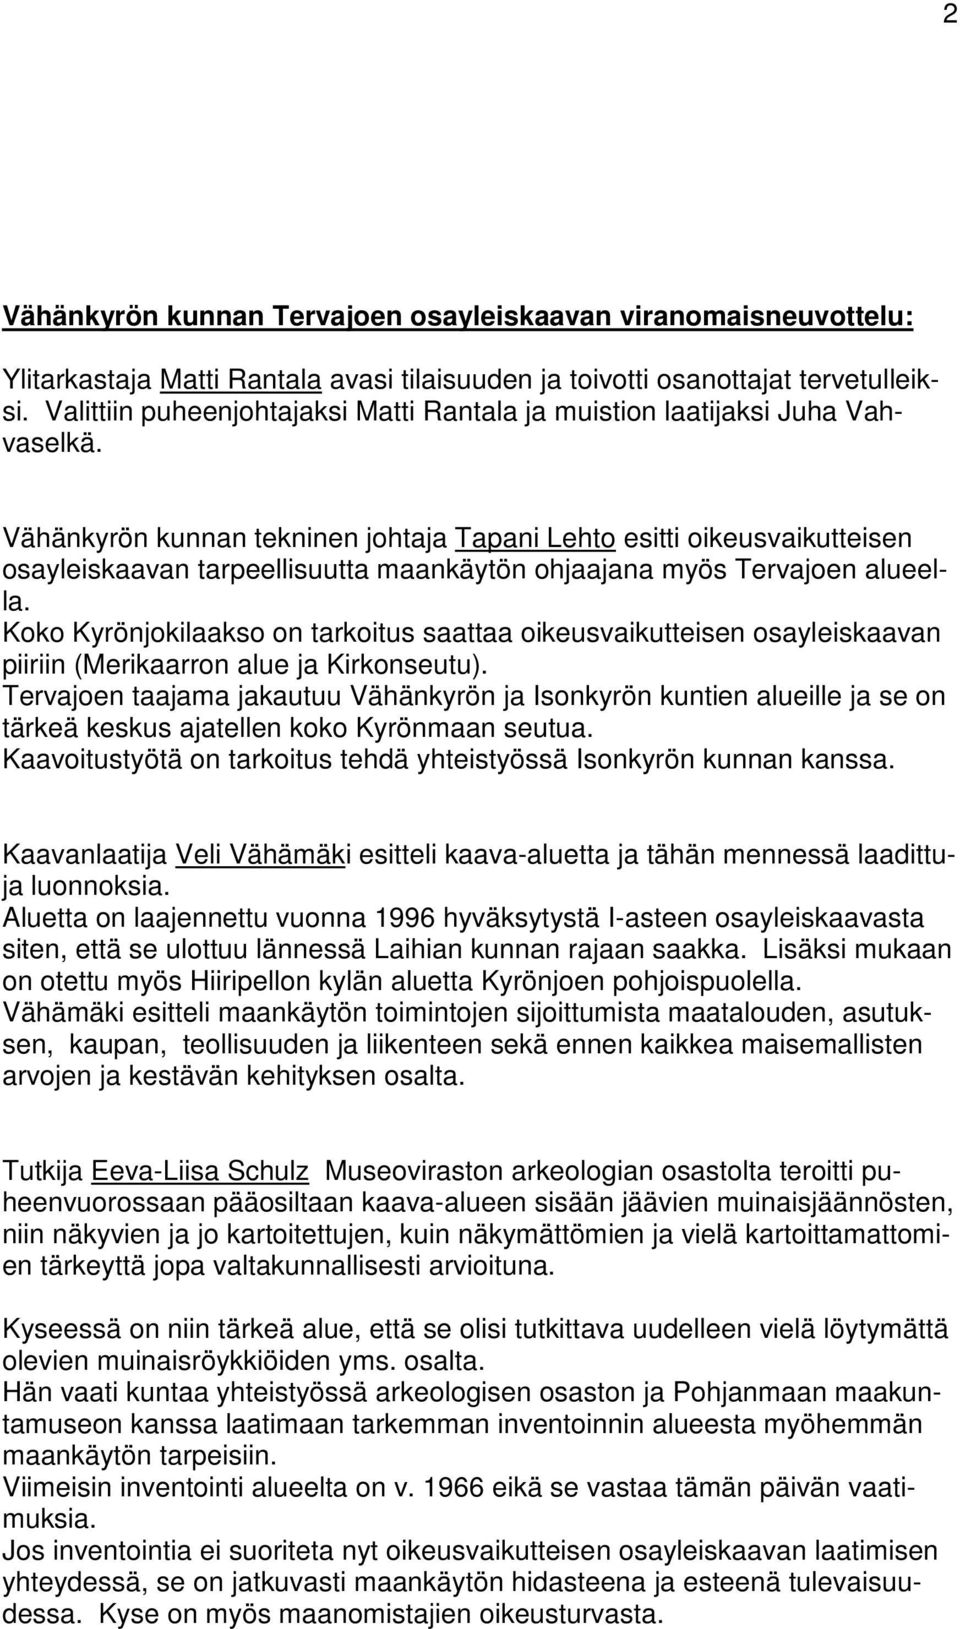 Vähänkyrön kunnan tekninen johtaja Tapani Lehto esitti oikeusvaikutteisen osayleiskaavan tarpeellisuutta maankäytön ohjaajana myös Tervajoen alueella.